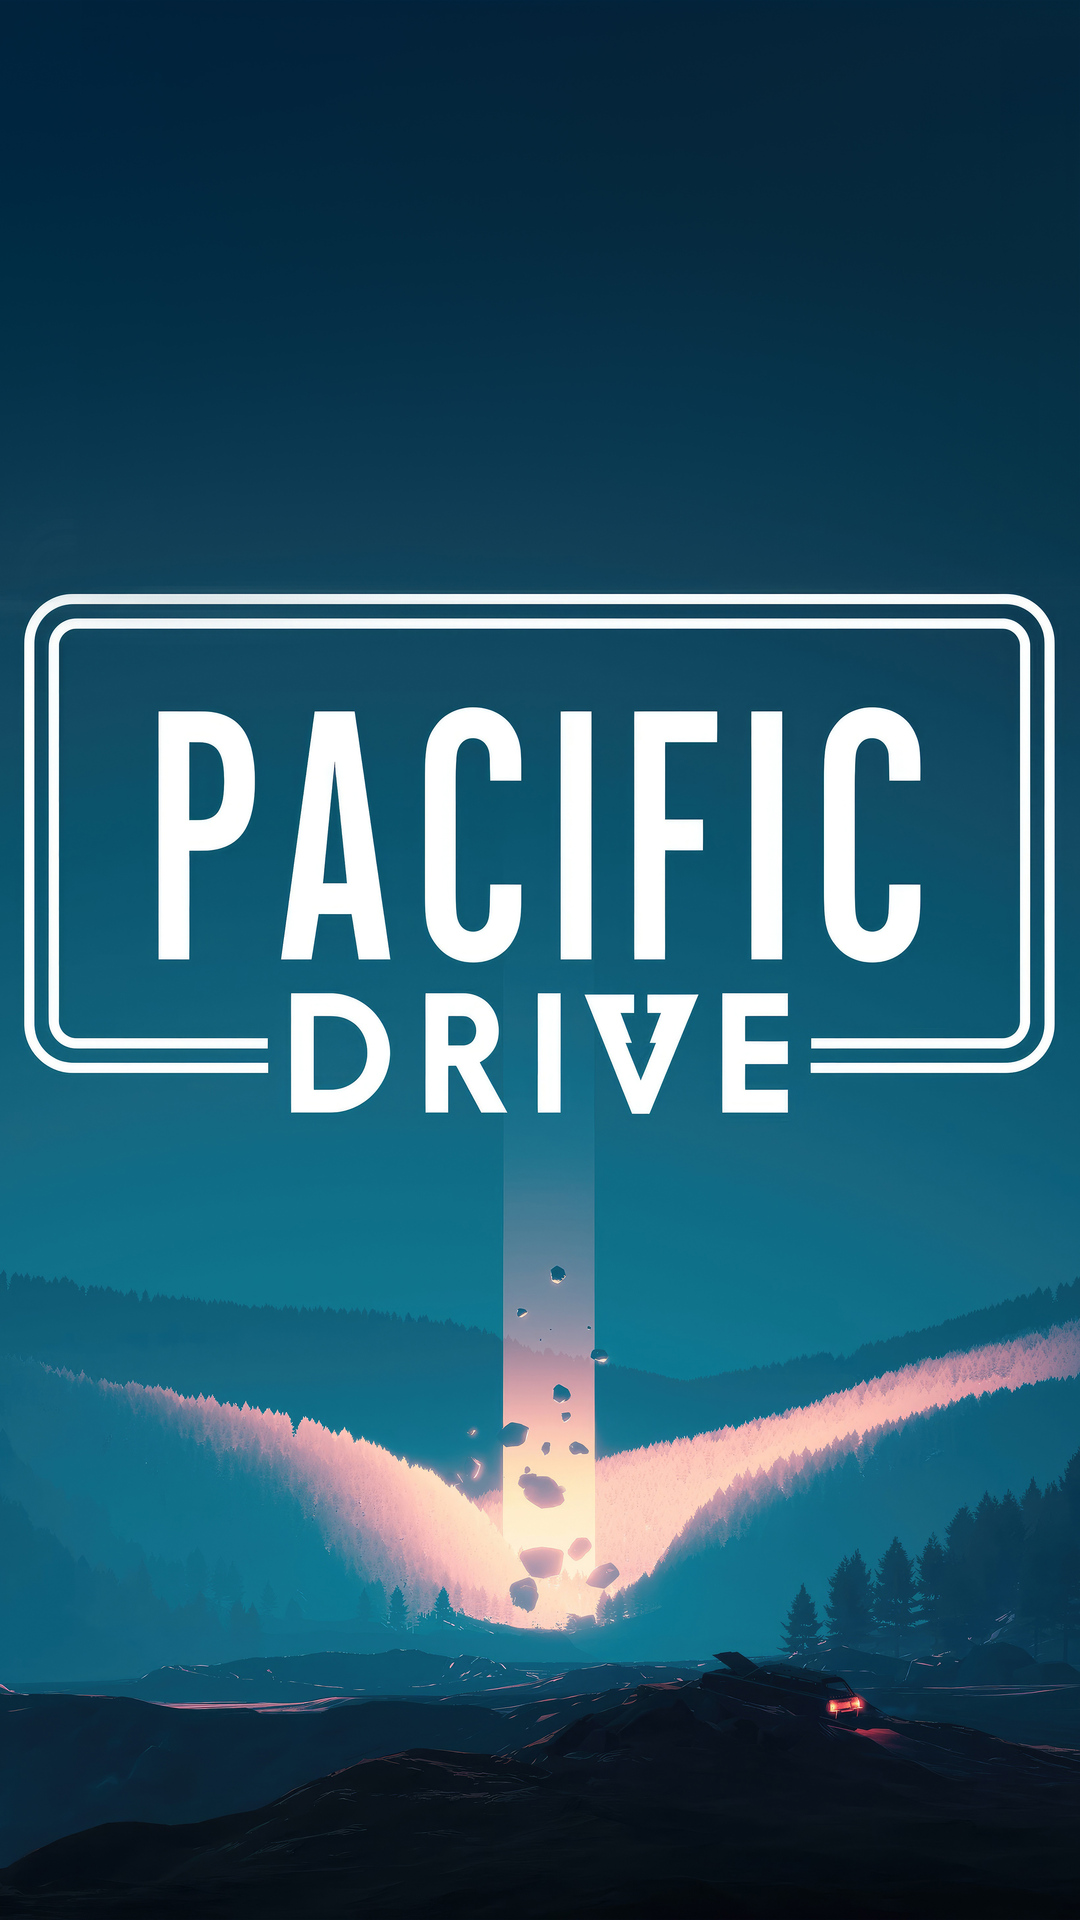 Pacific drive mods. Pacific Drive. Pacific Drive ps5. Pacific Driver. Pacific Drive Скриншоты.